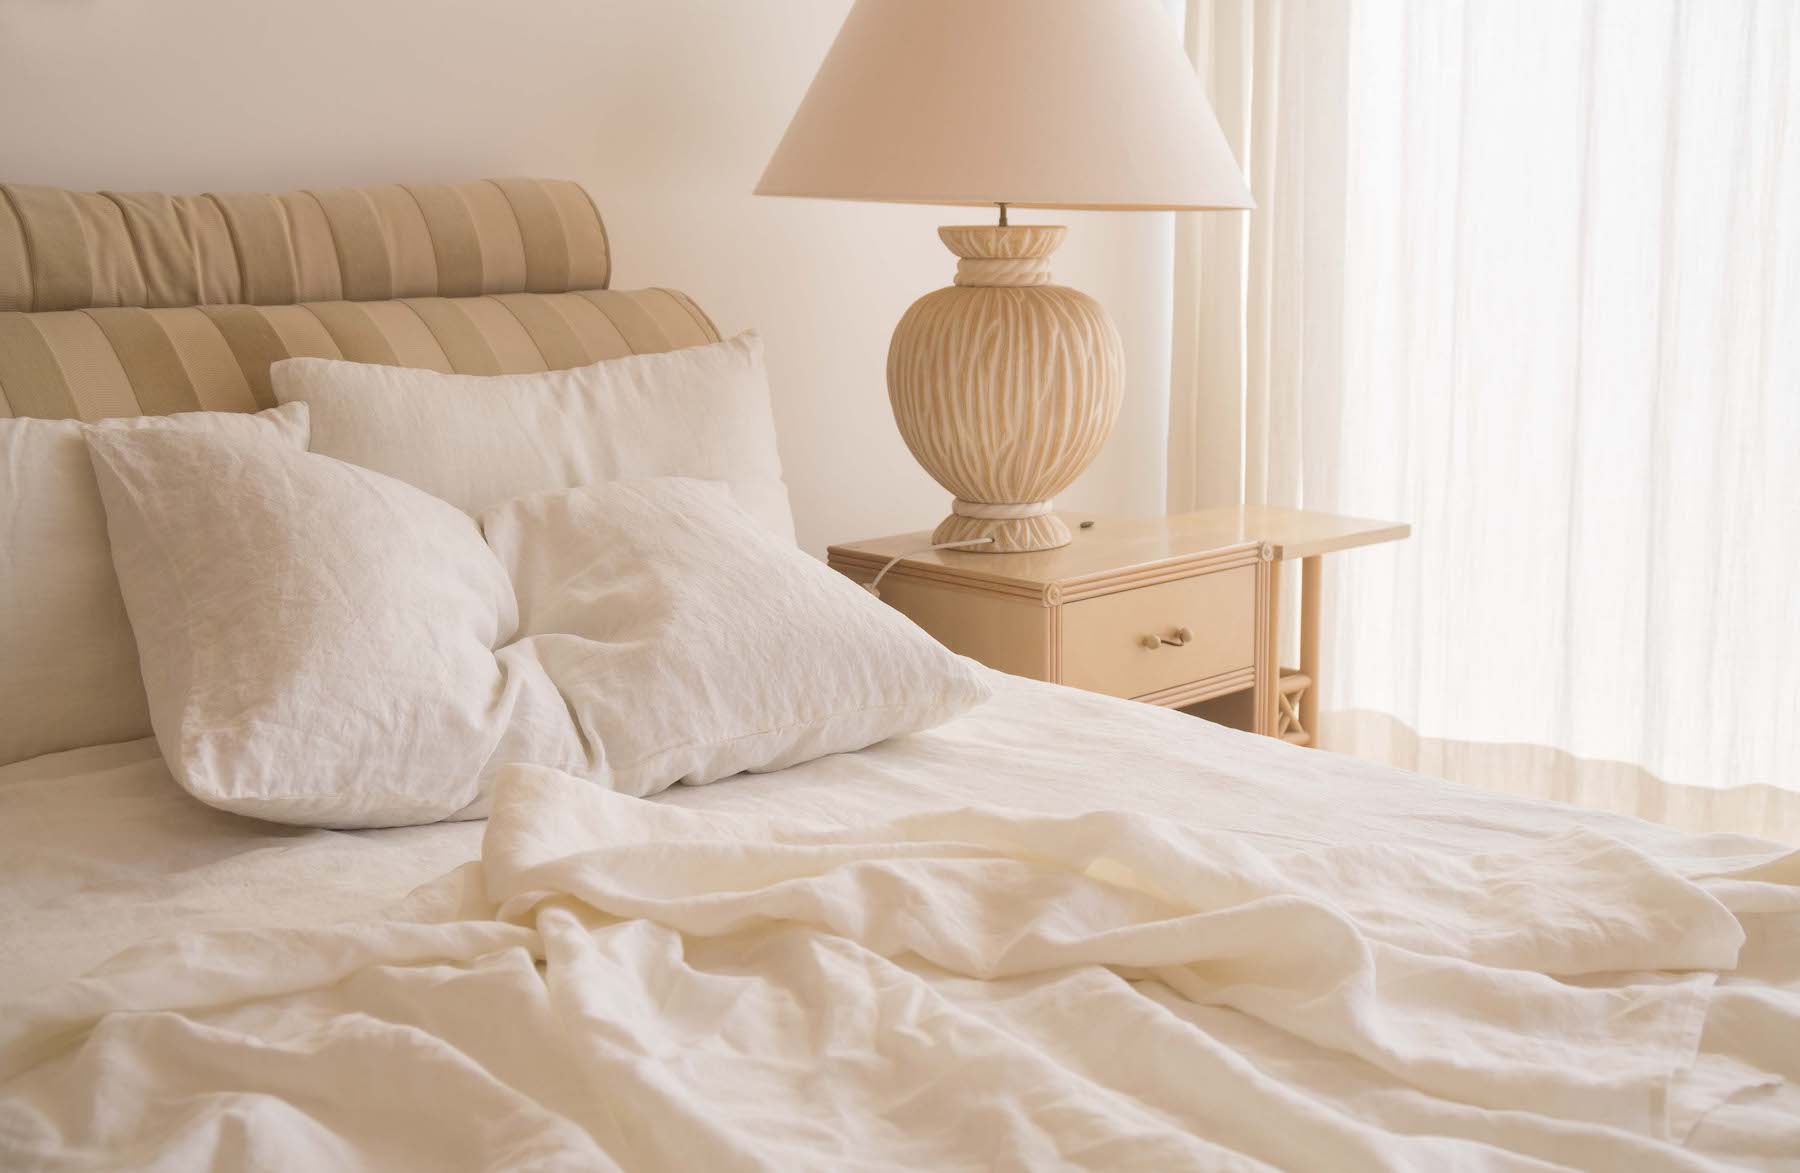 White linen bedding in sunlit bedroom, off white aesthetic interior design - Lagodie Linen.jpg